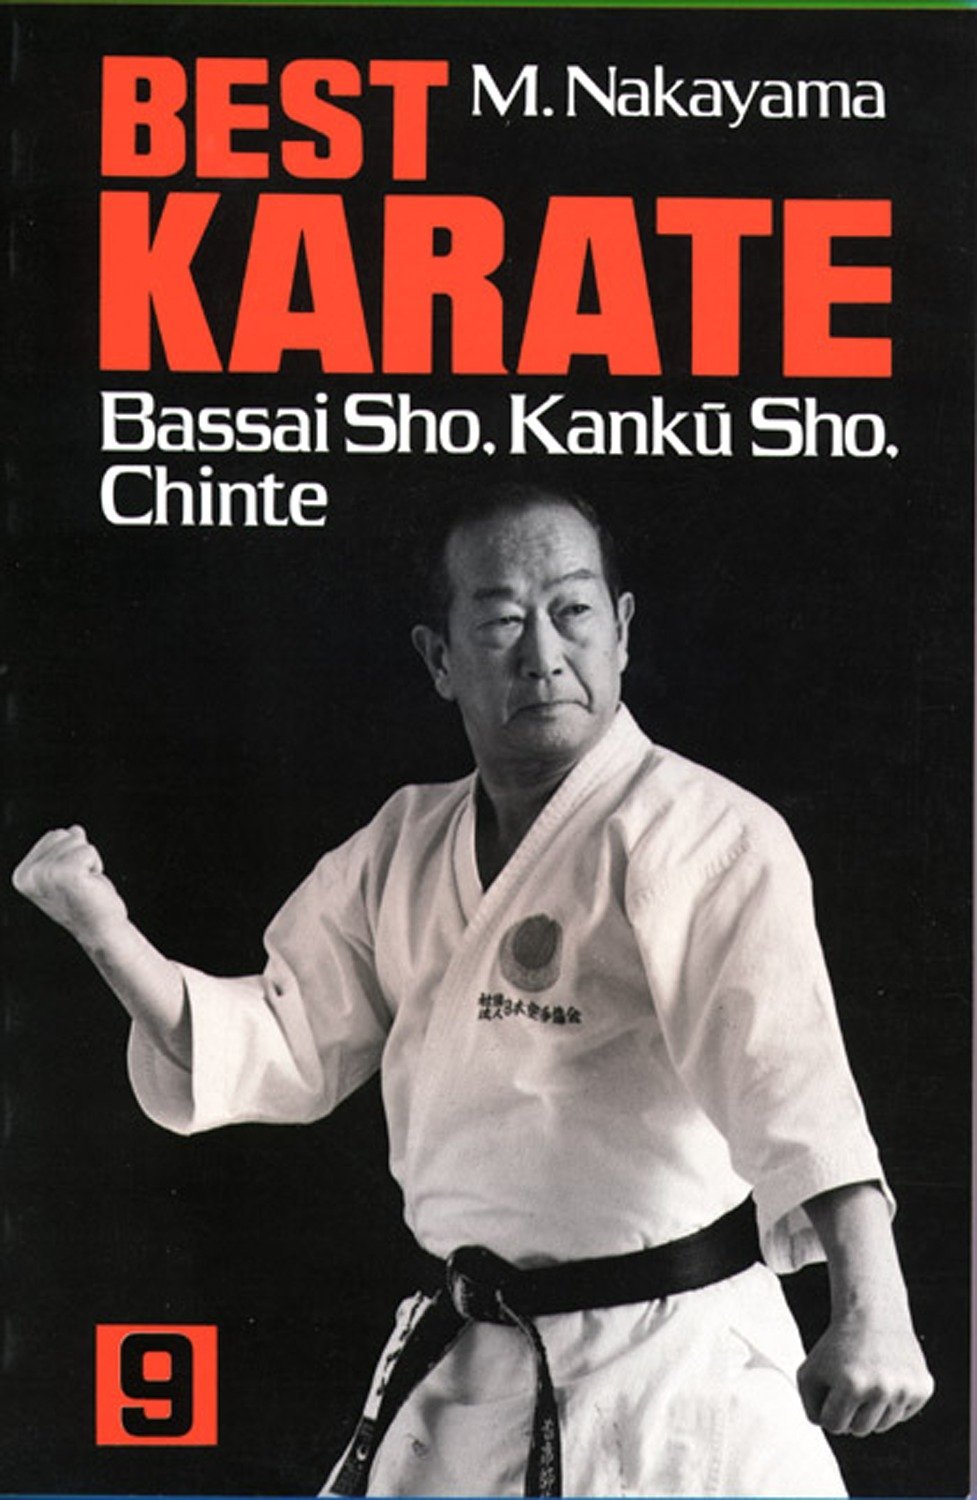 Best Karate Book 9: Bassai Sho, Kanku, Sho, Chinte by Masatoshi Nakayama - Budovideos Inc